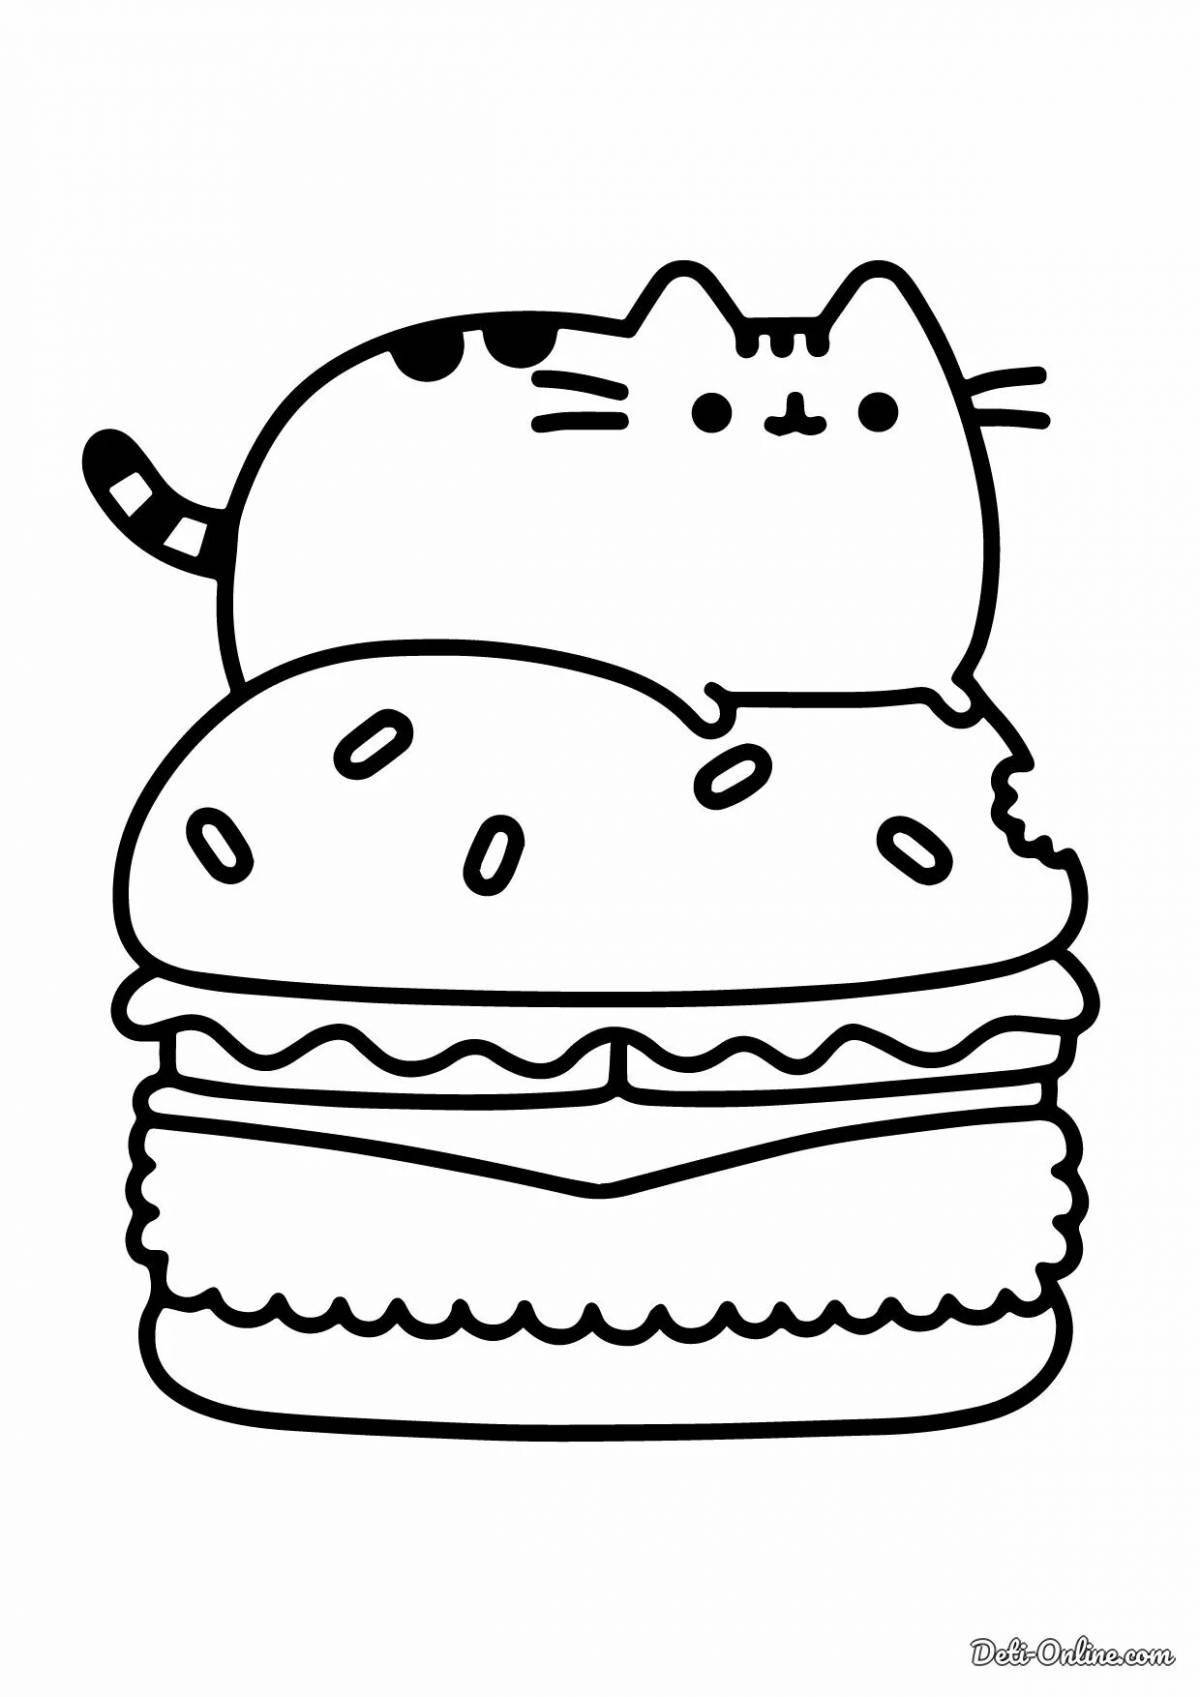 Раскраски Котенок и Кошки для детей - Распечатать и Онлайн!